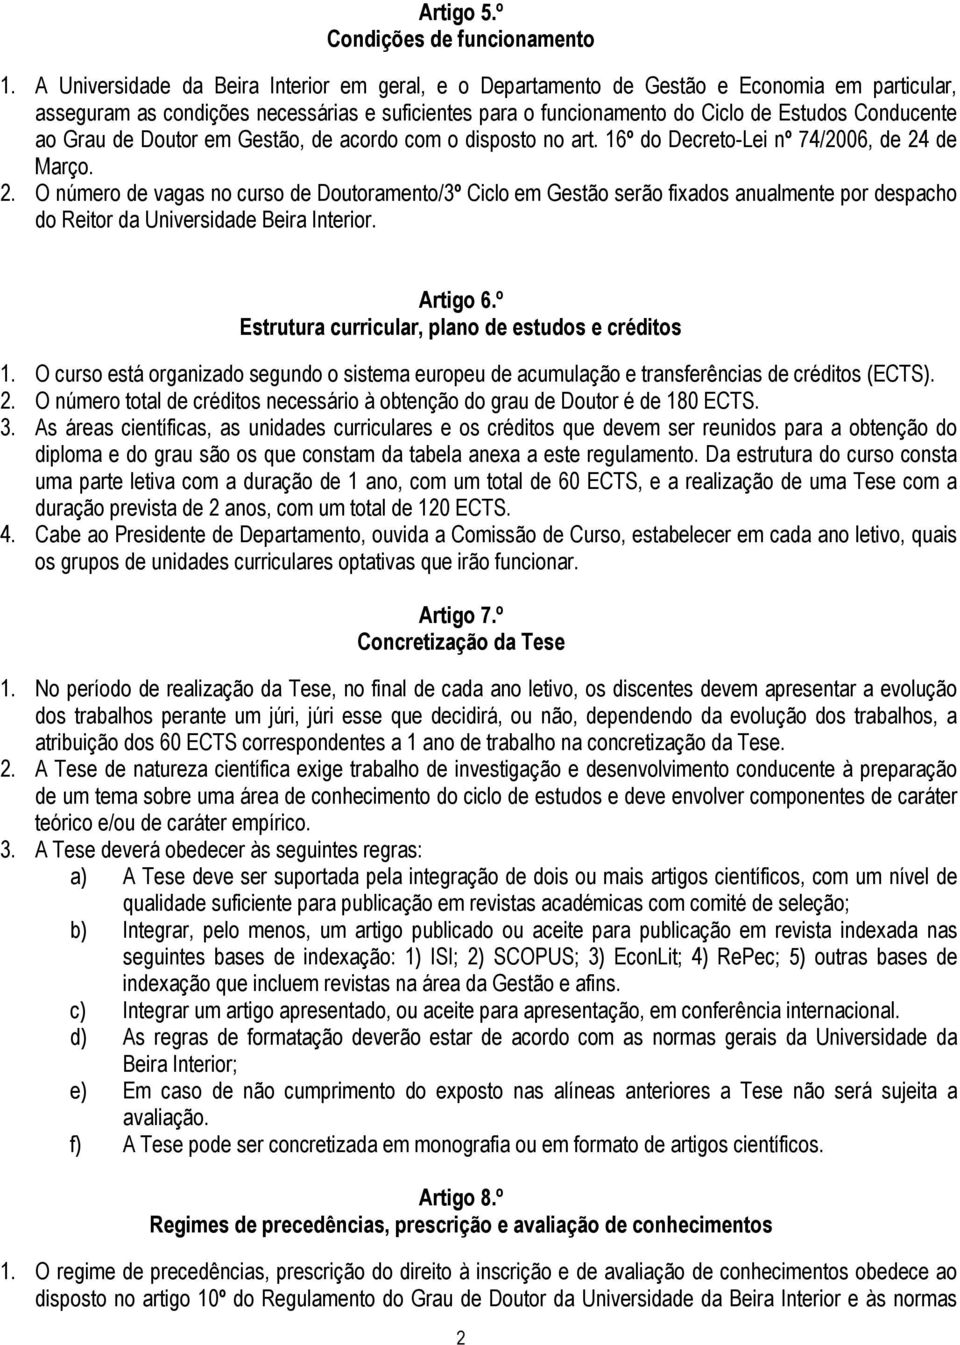 Grau de Doutor em Gestão, de acordo com o disposto no art. 16º do Decreto-Lei nº 74/2006, de 24